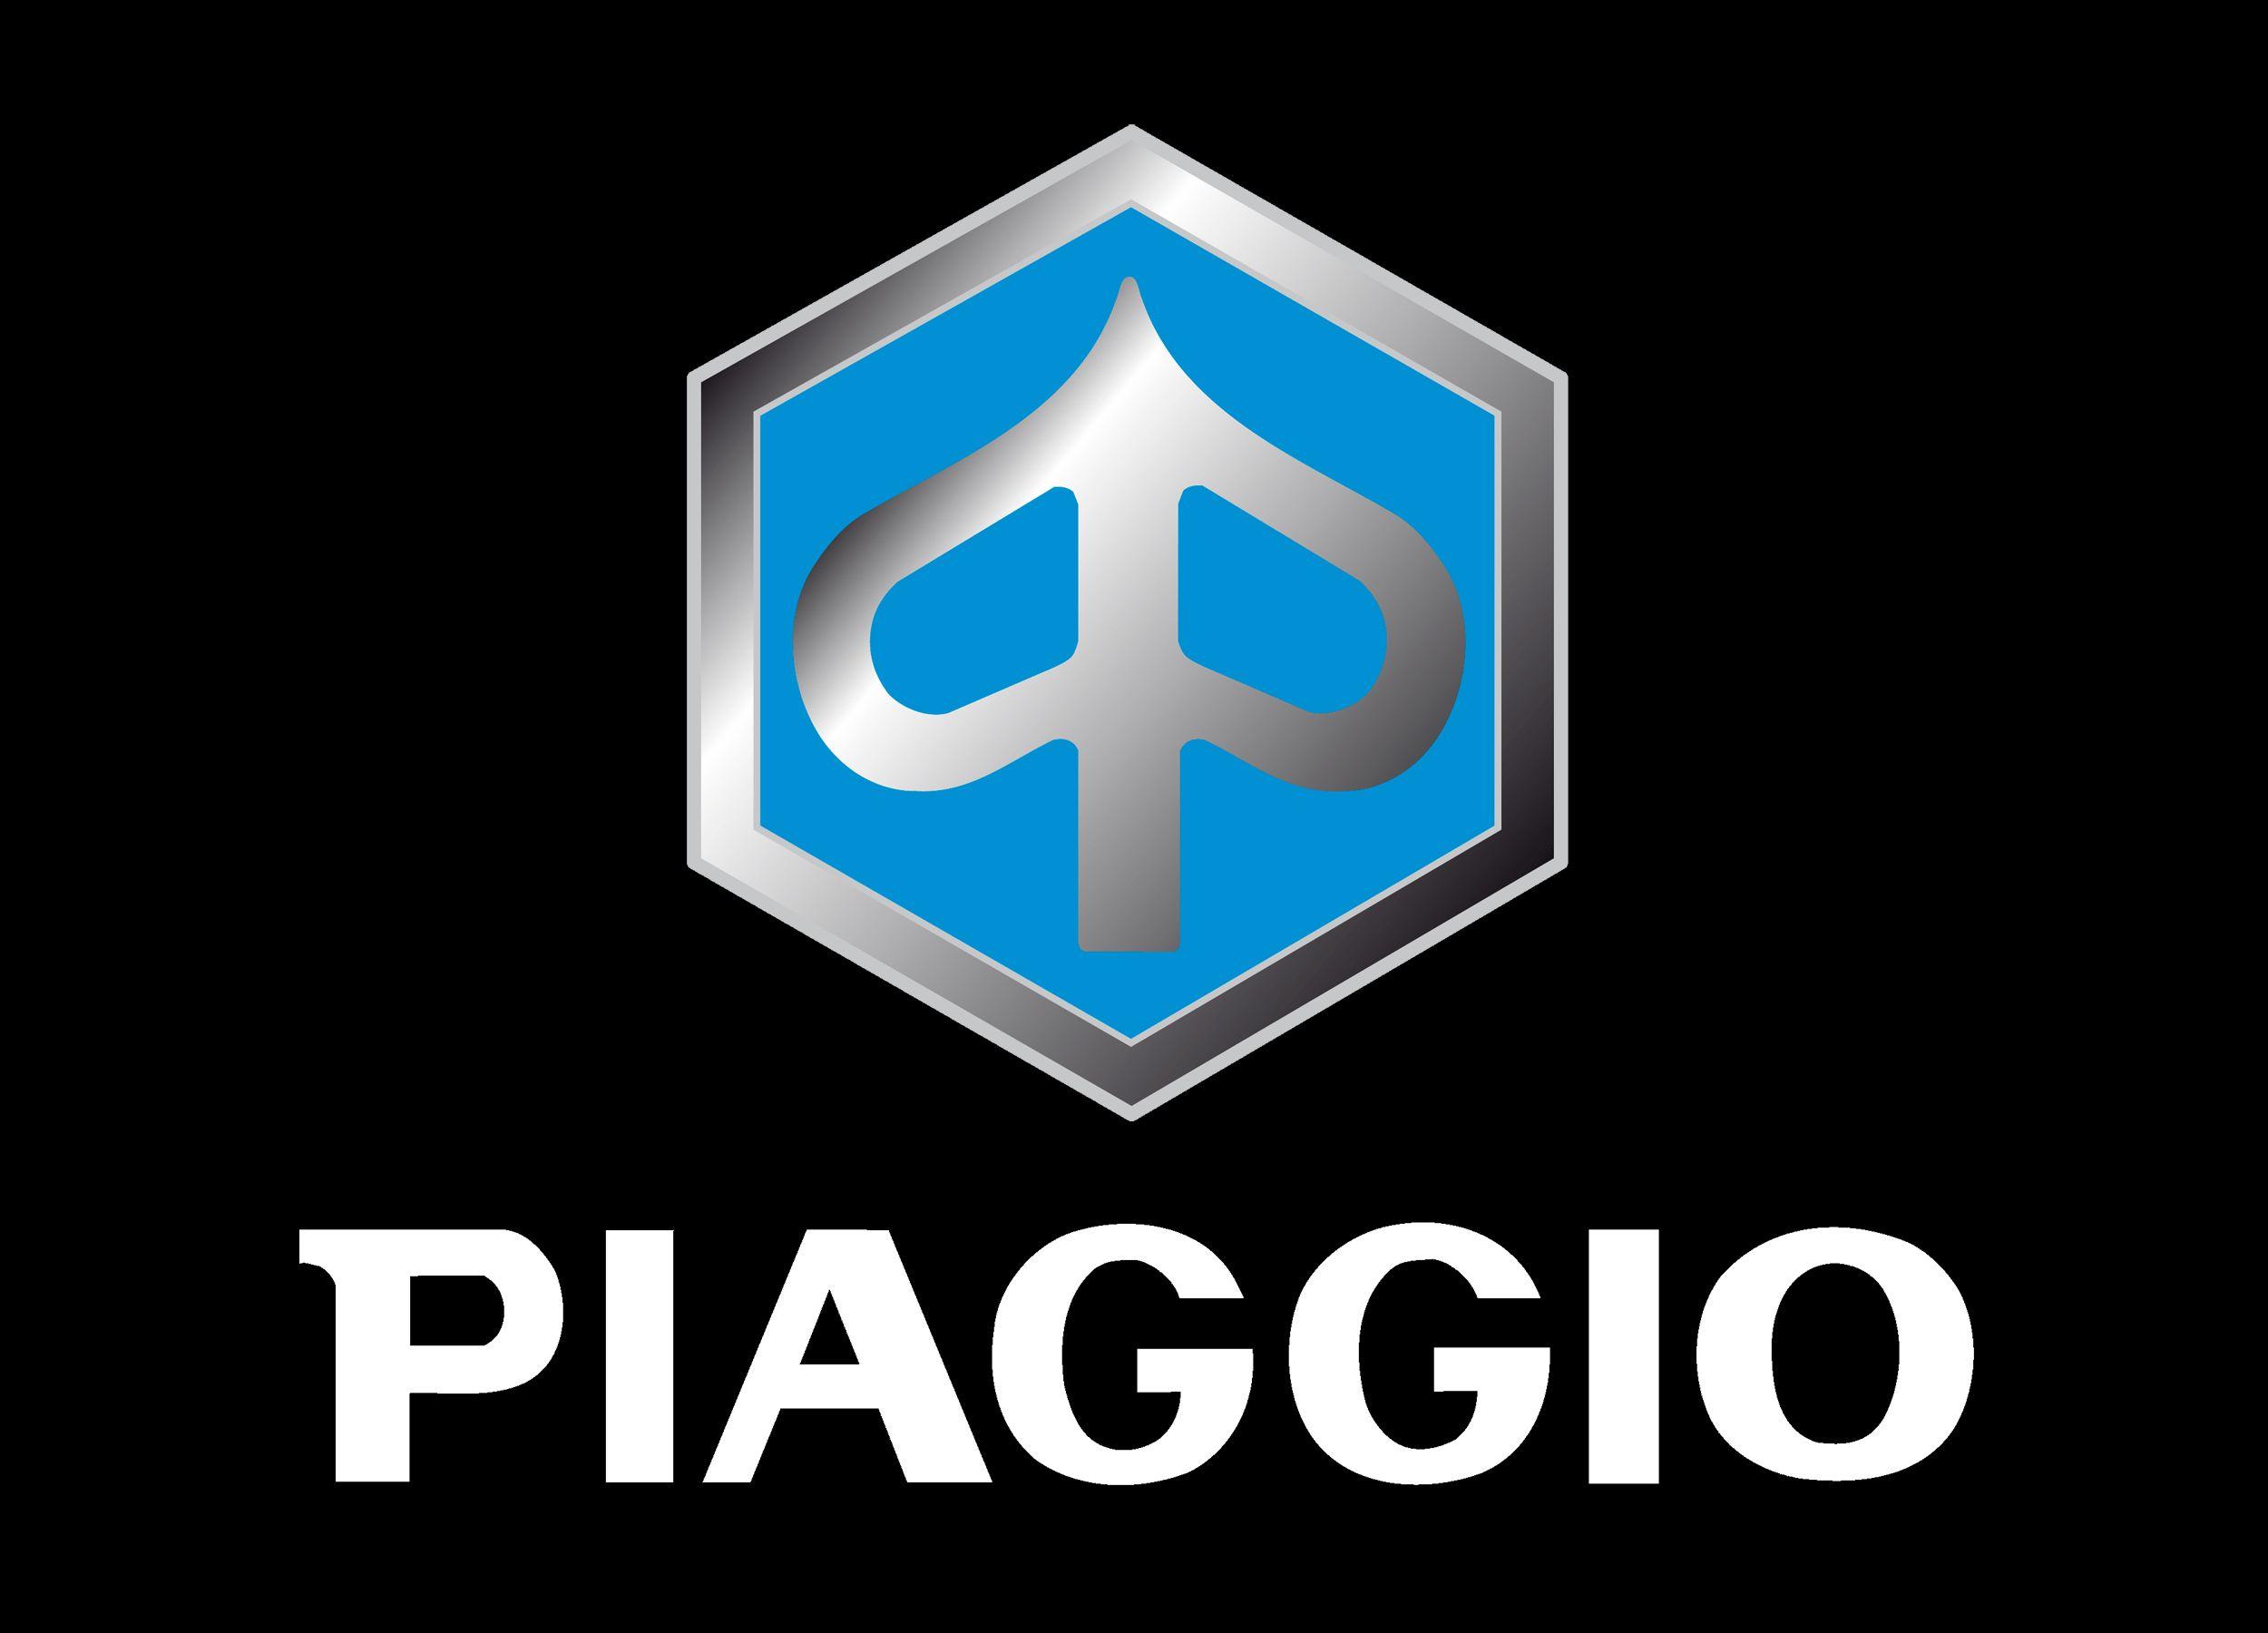 Piaggo Logo - Piaggio logo | Motorcycle brands: logo, specs, history.